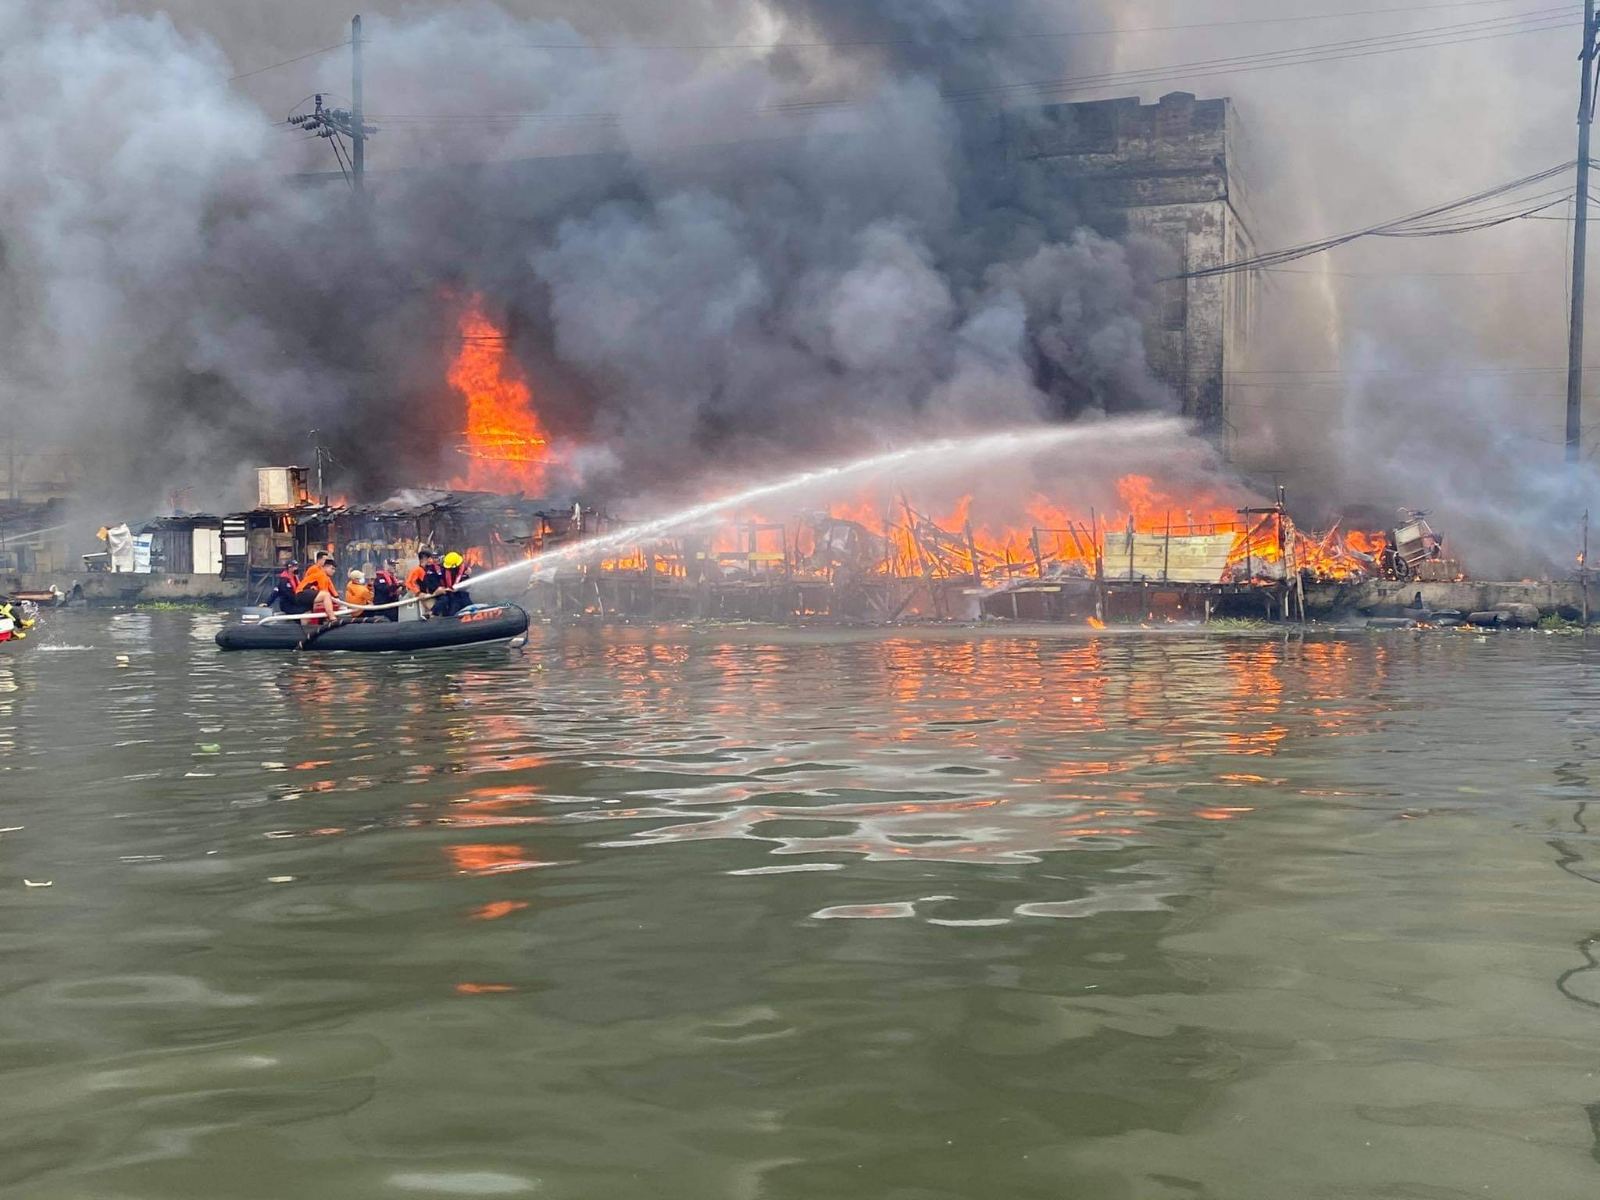 cargo ship catches fire near Delpan Bridge in Manila